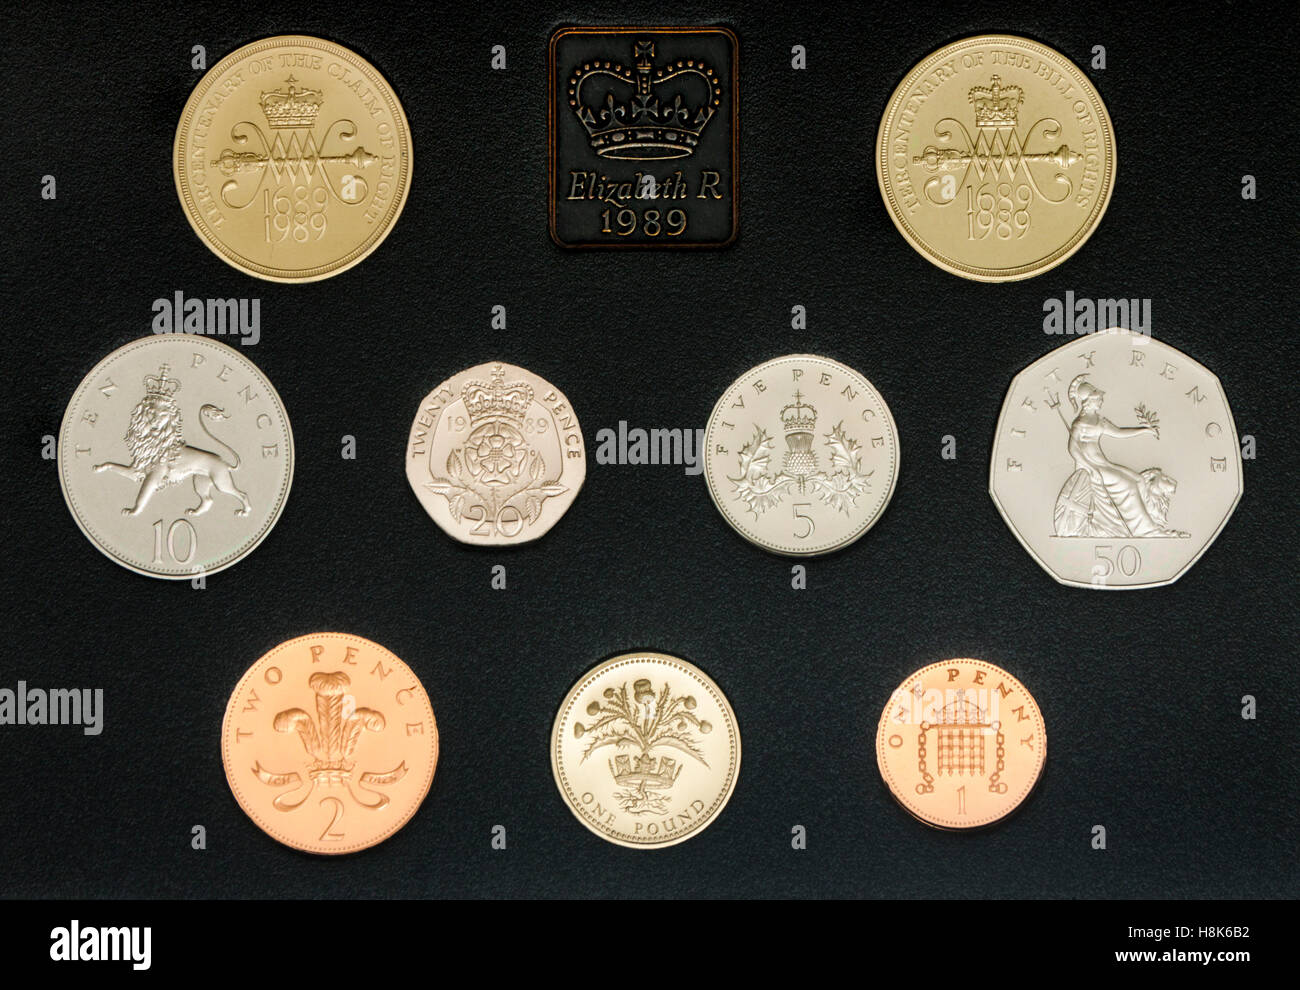 Royal Mint ensemble complet de Royaume-uni la preuve des crédits pour l'année 1989 commémore le tricentenaire de la Déclaration des droits Banque D'Images